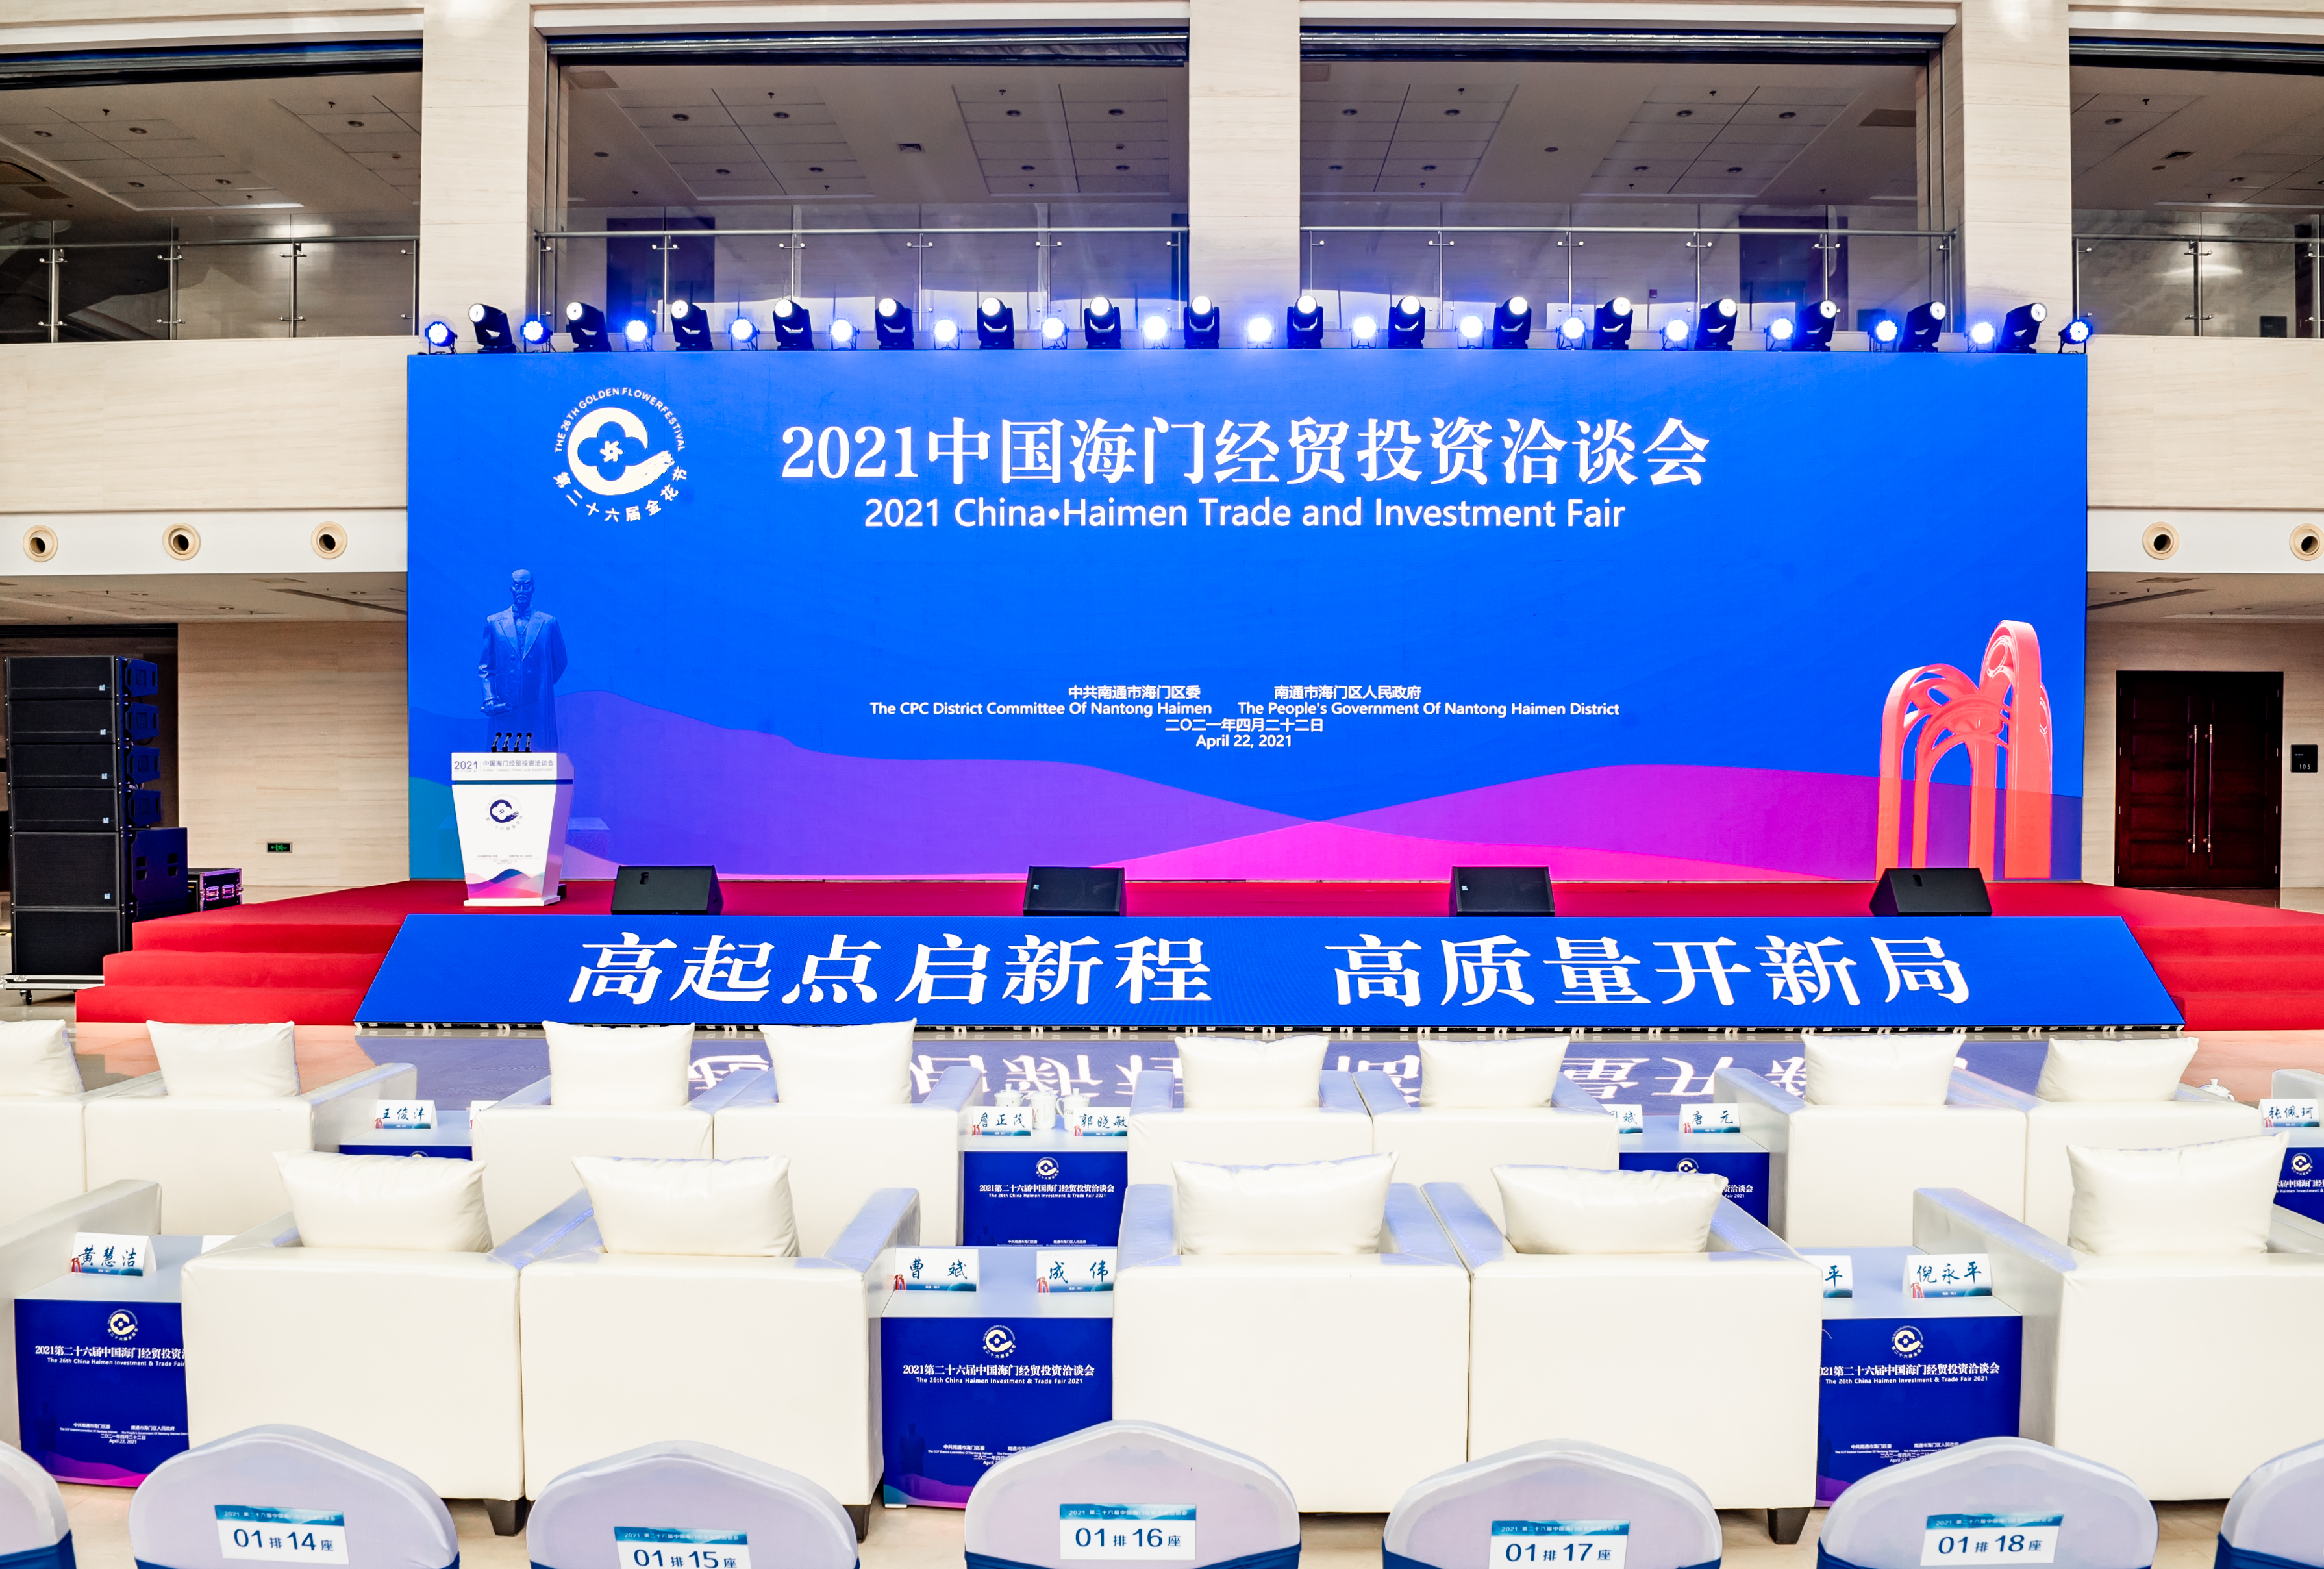 2021第二十六屆中國海門經貿洽談會